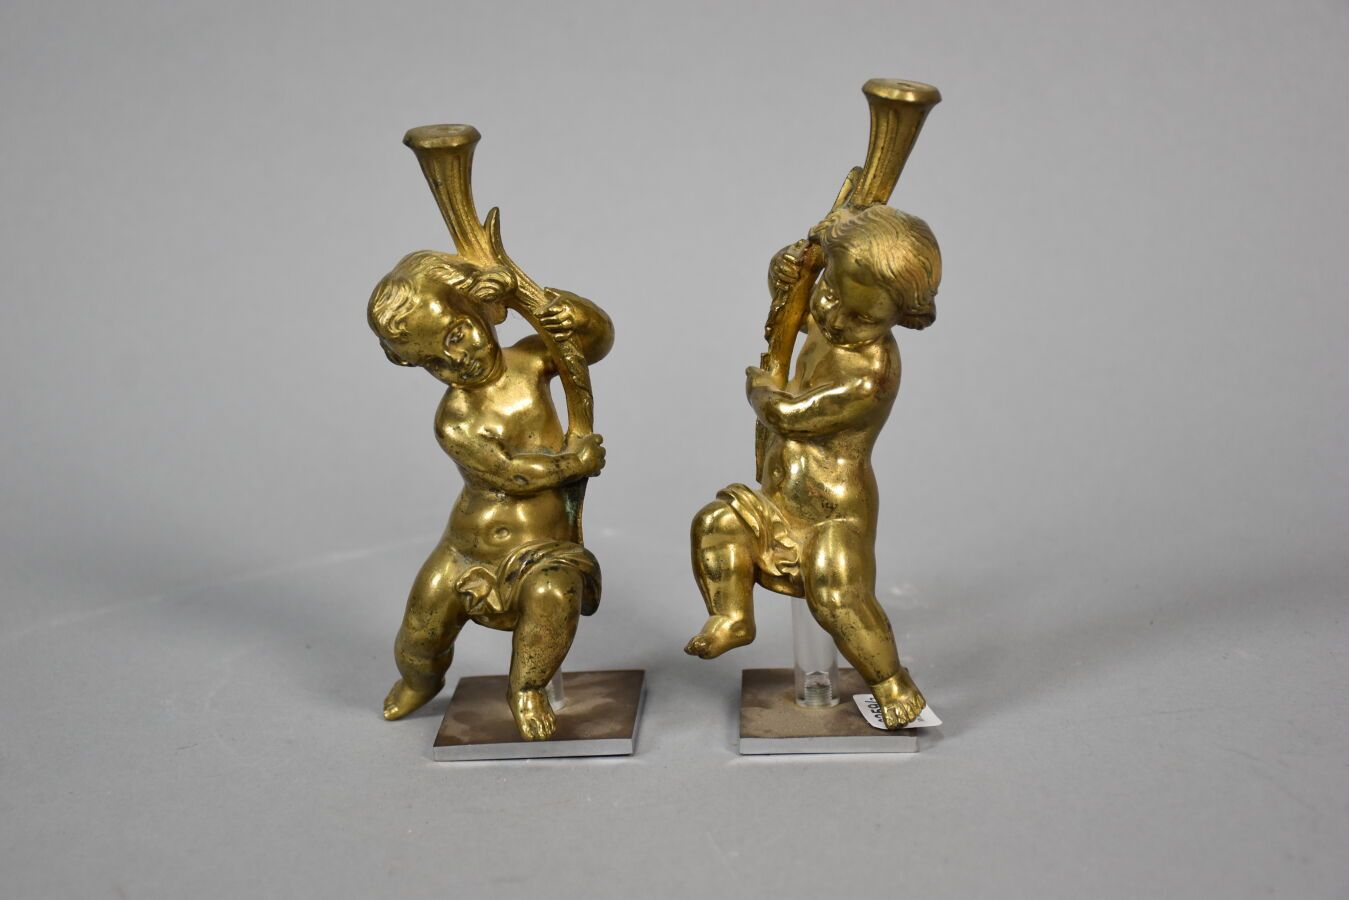 Null XIX secolo
Coppia di putti in bronzo
Altezza: 14 cm Altezza: 14 cm